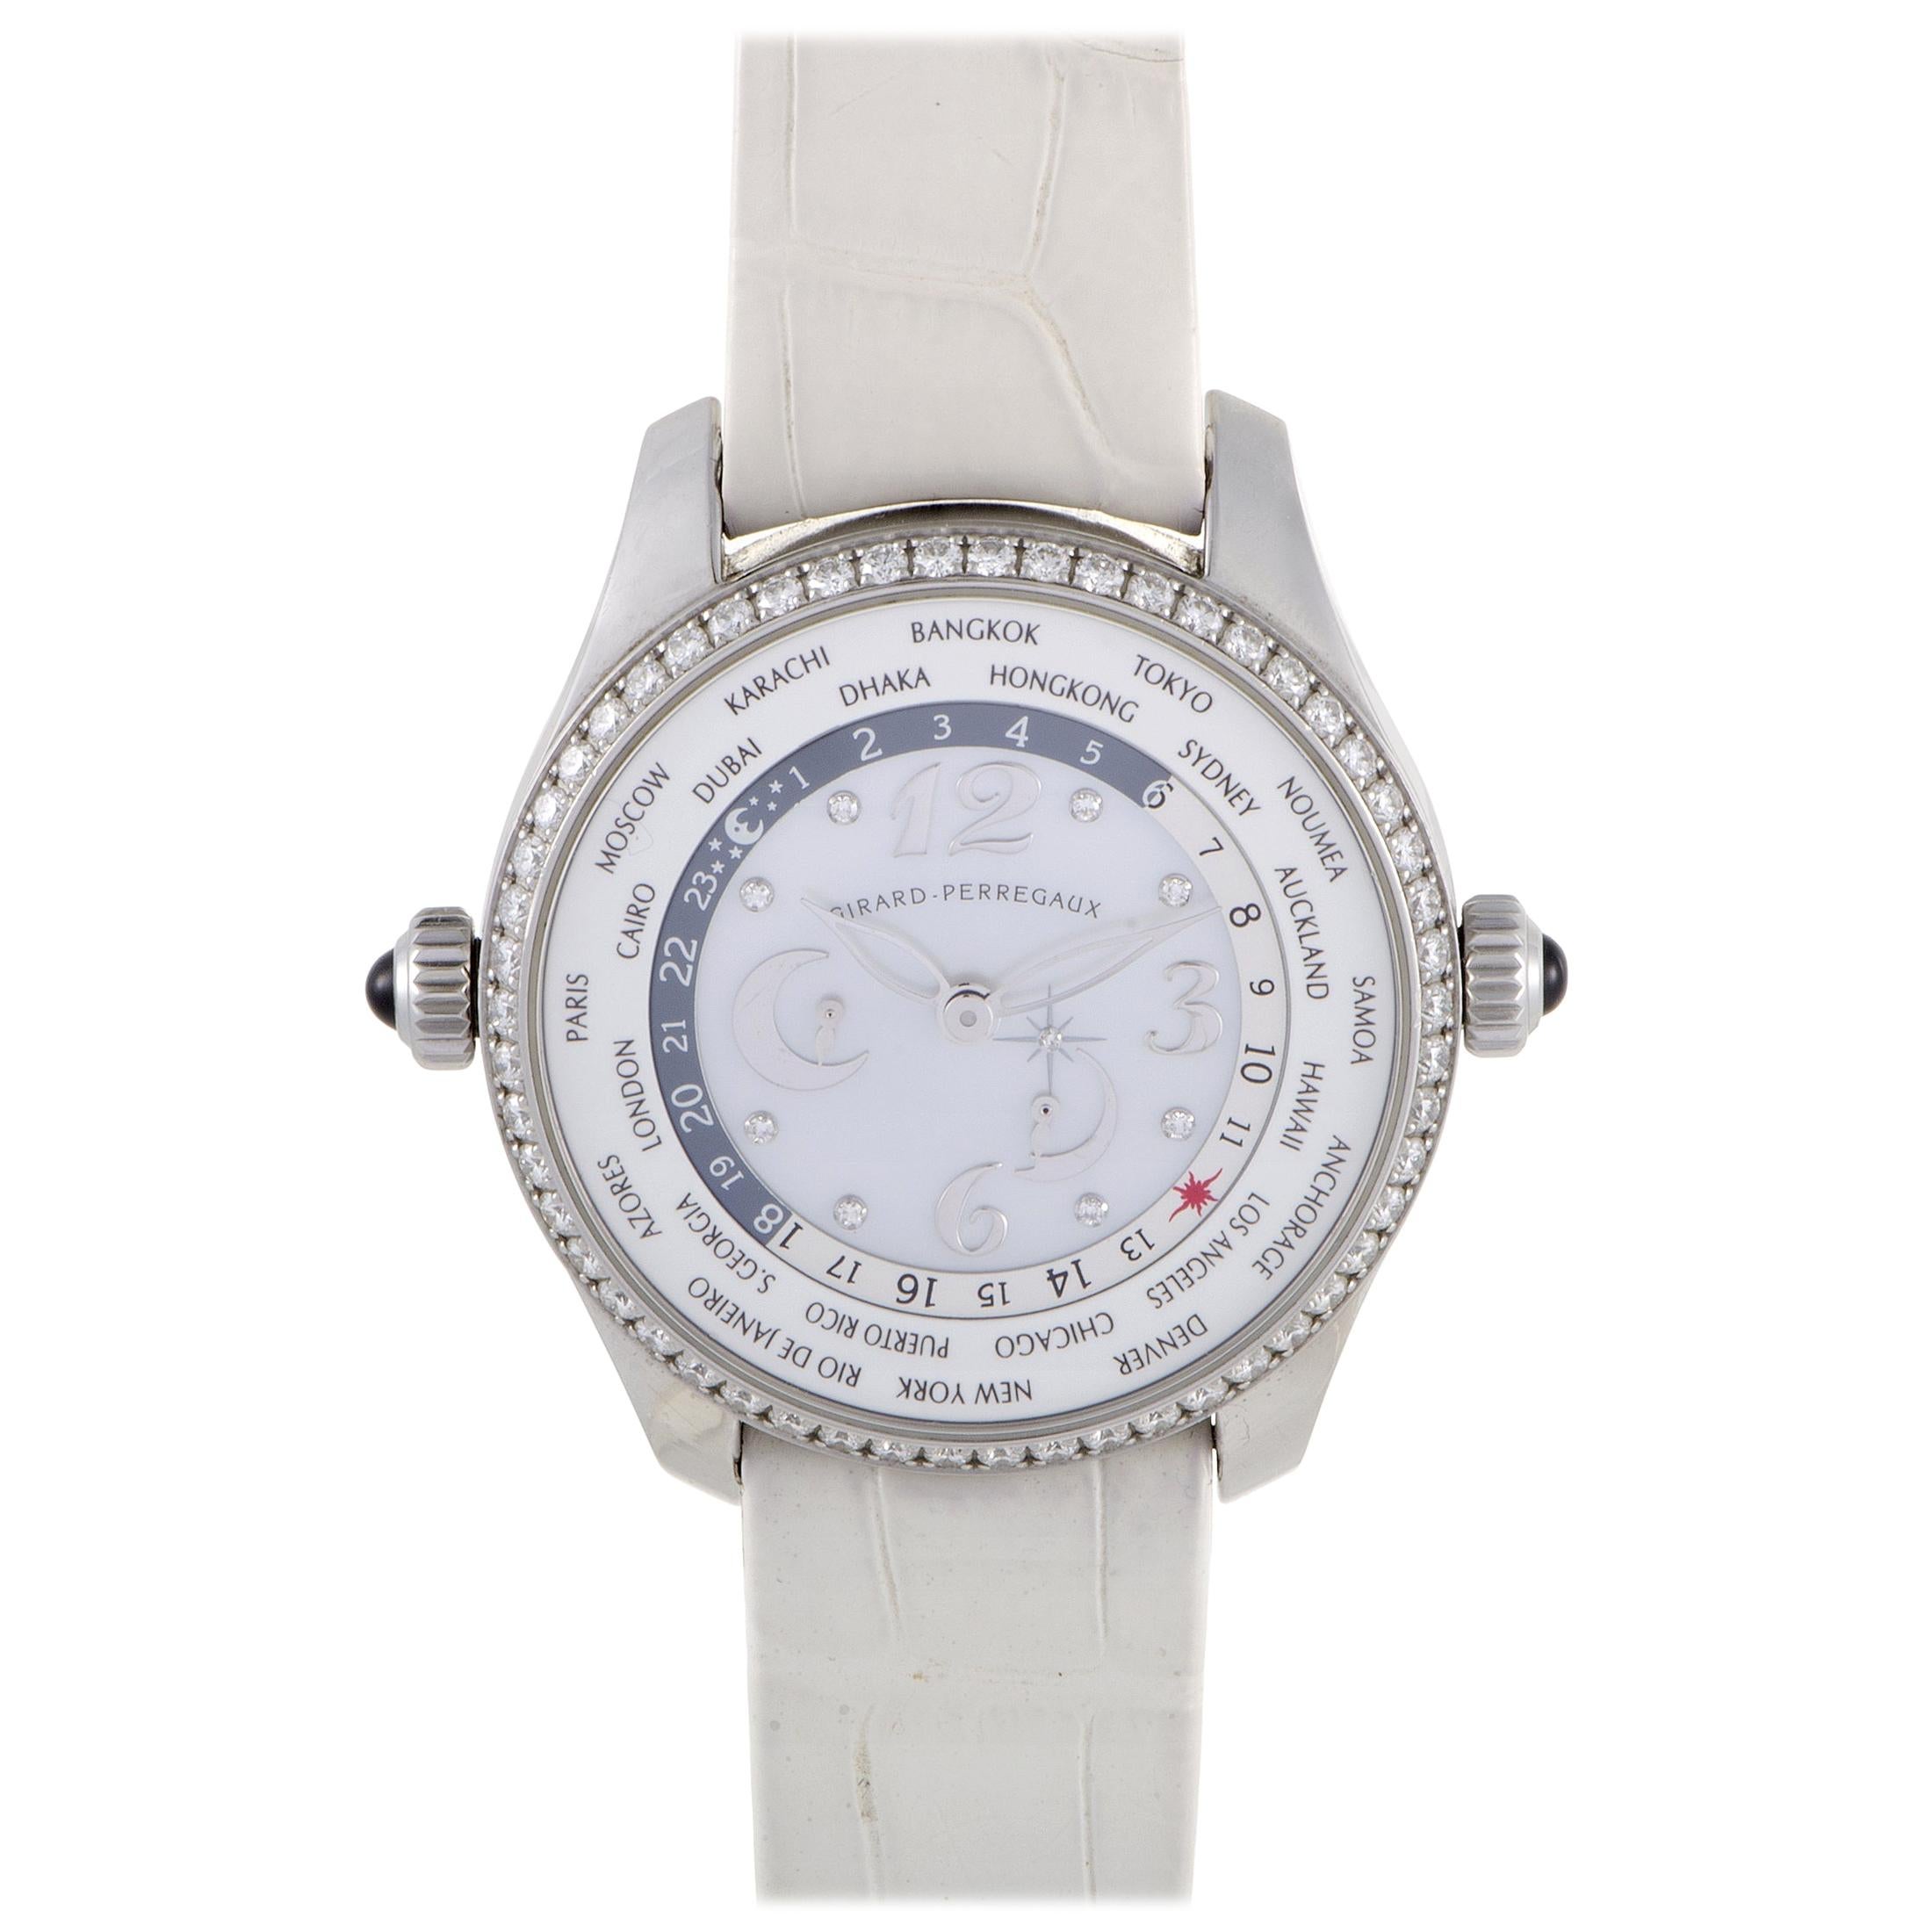 Girard Perregaux Girard-Perregaux WW.TC Ladies Automatic Watch 49860D11A761-BK7A